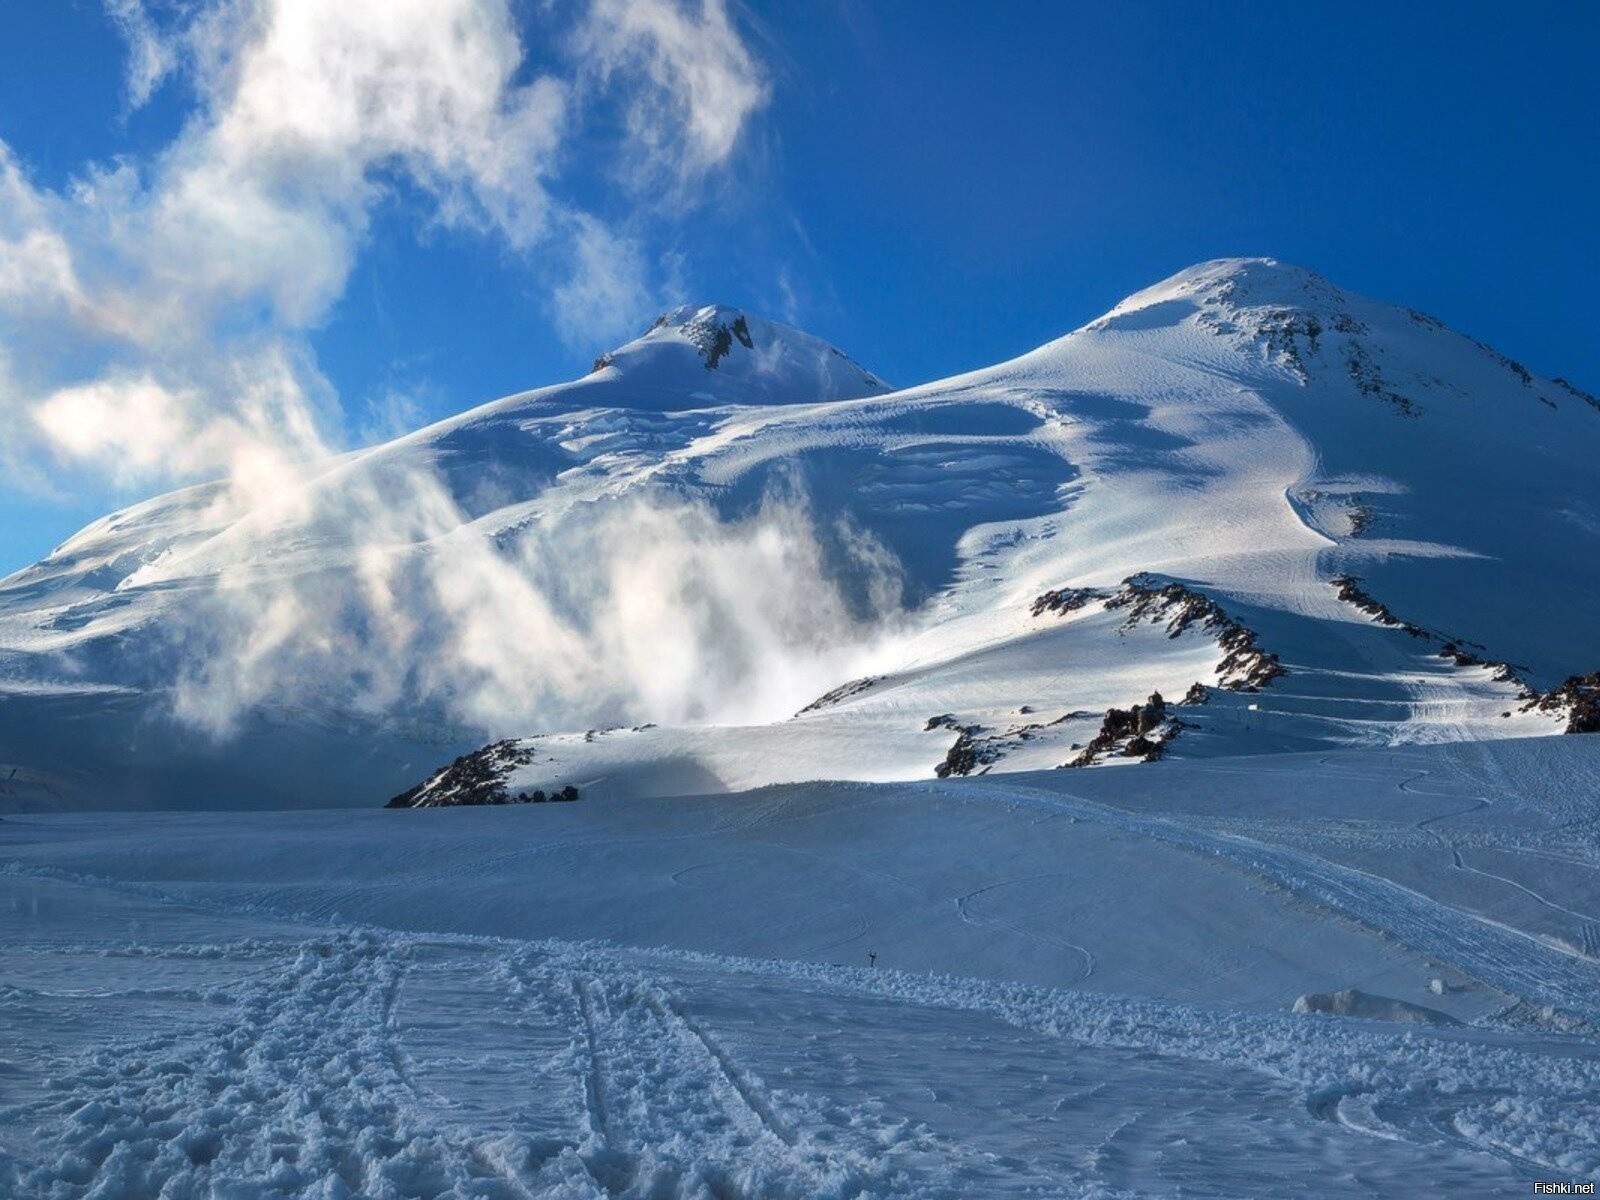 Фотографии эльбруса. Вершина горы Эльбрус. Гора Эльбрус 5642. Эльбрус 5642 метра. Пик Эльбрус в Карачаево-Черкесии, Кабардино-Балкарии..